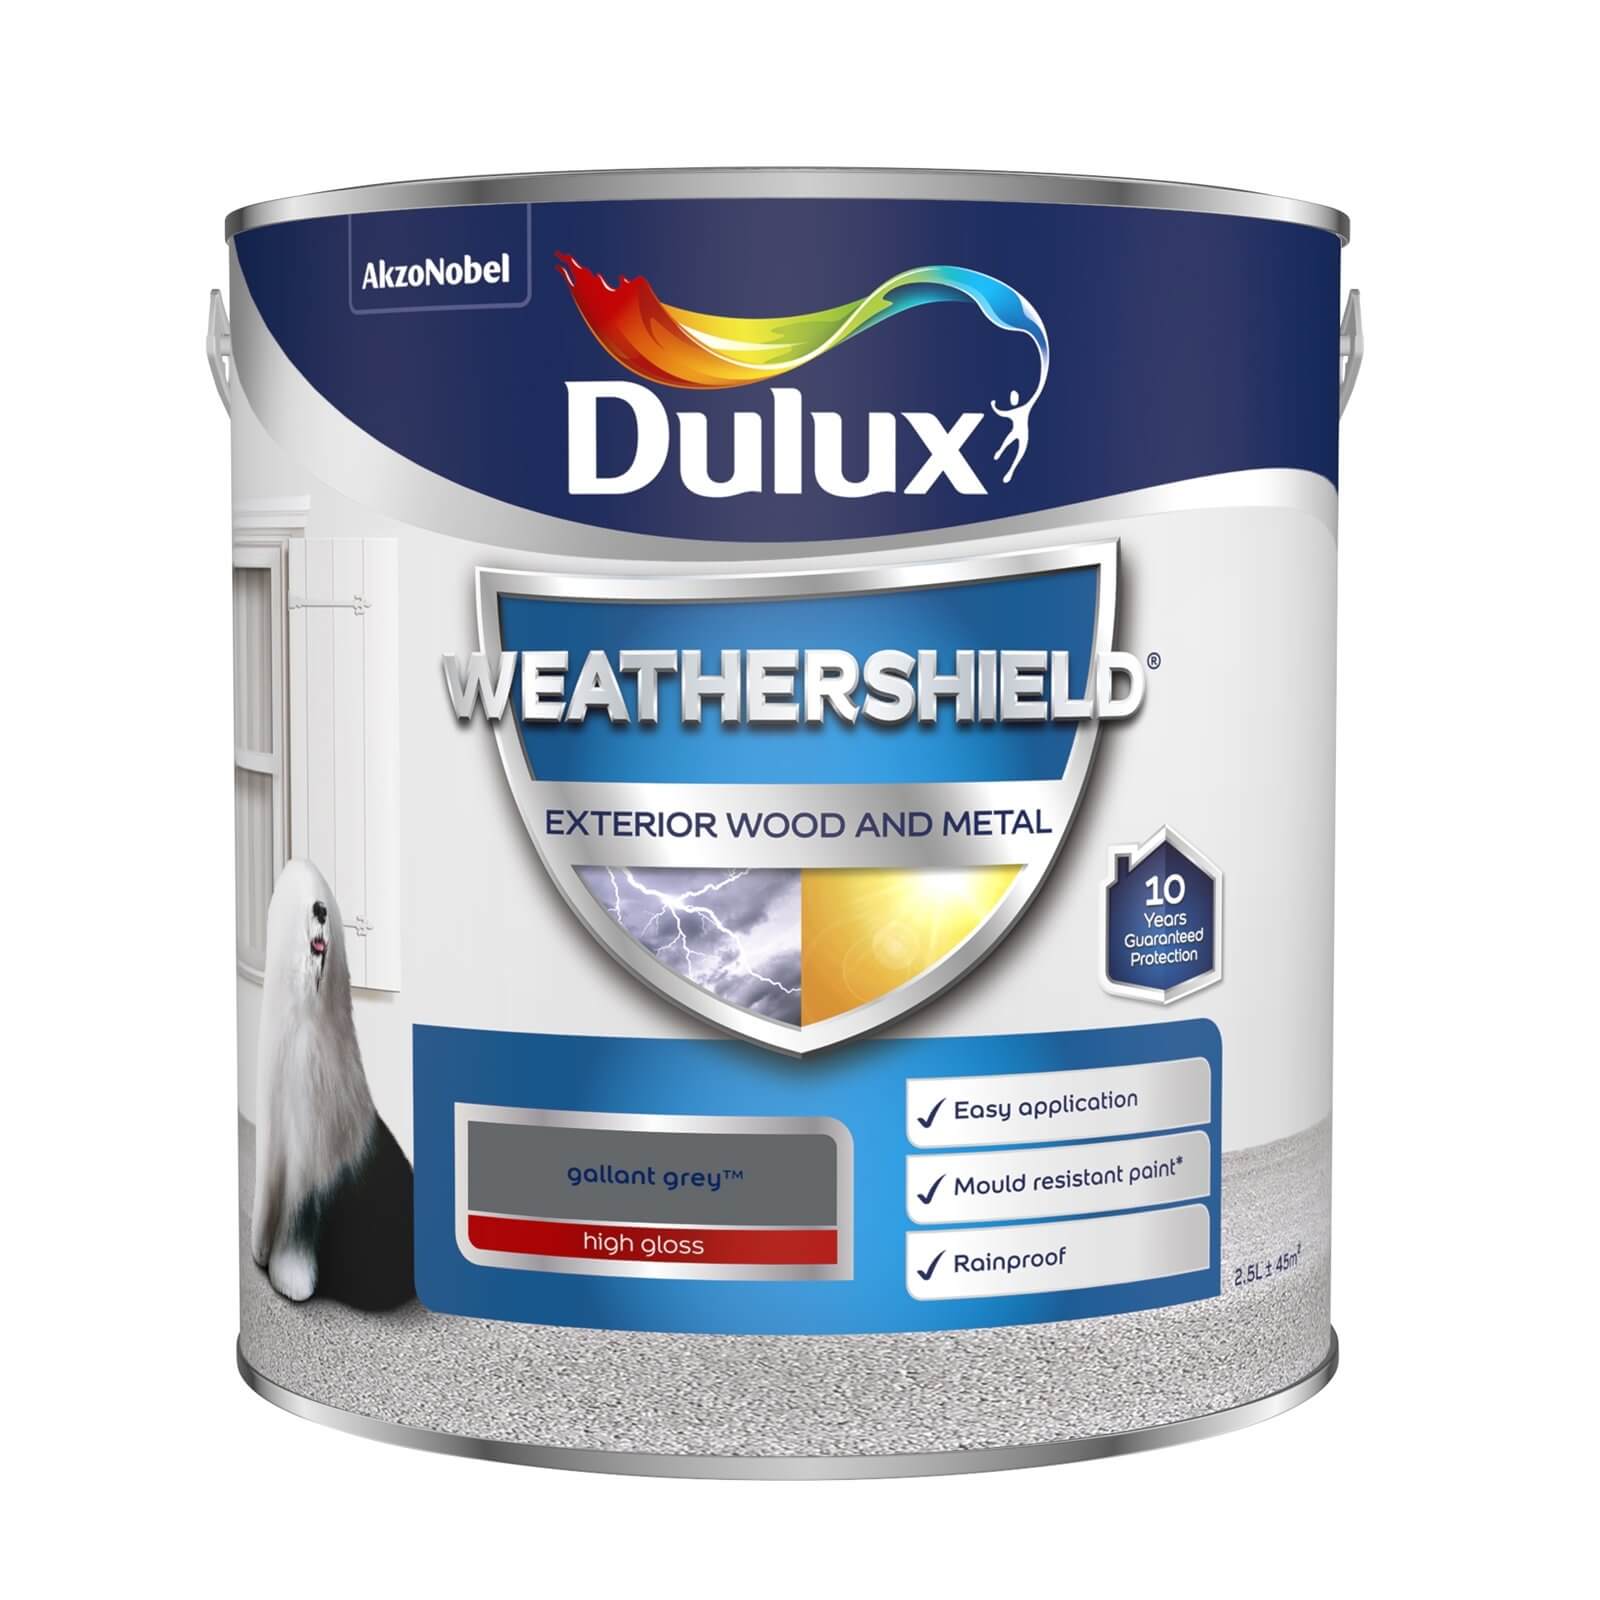 Dulux Weathershield Gloss Paint Gallant Grey - 2.5L